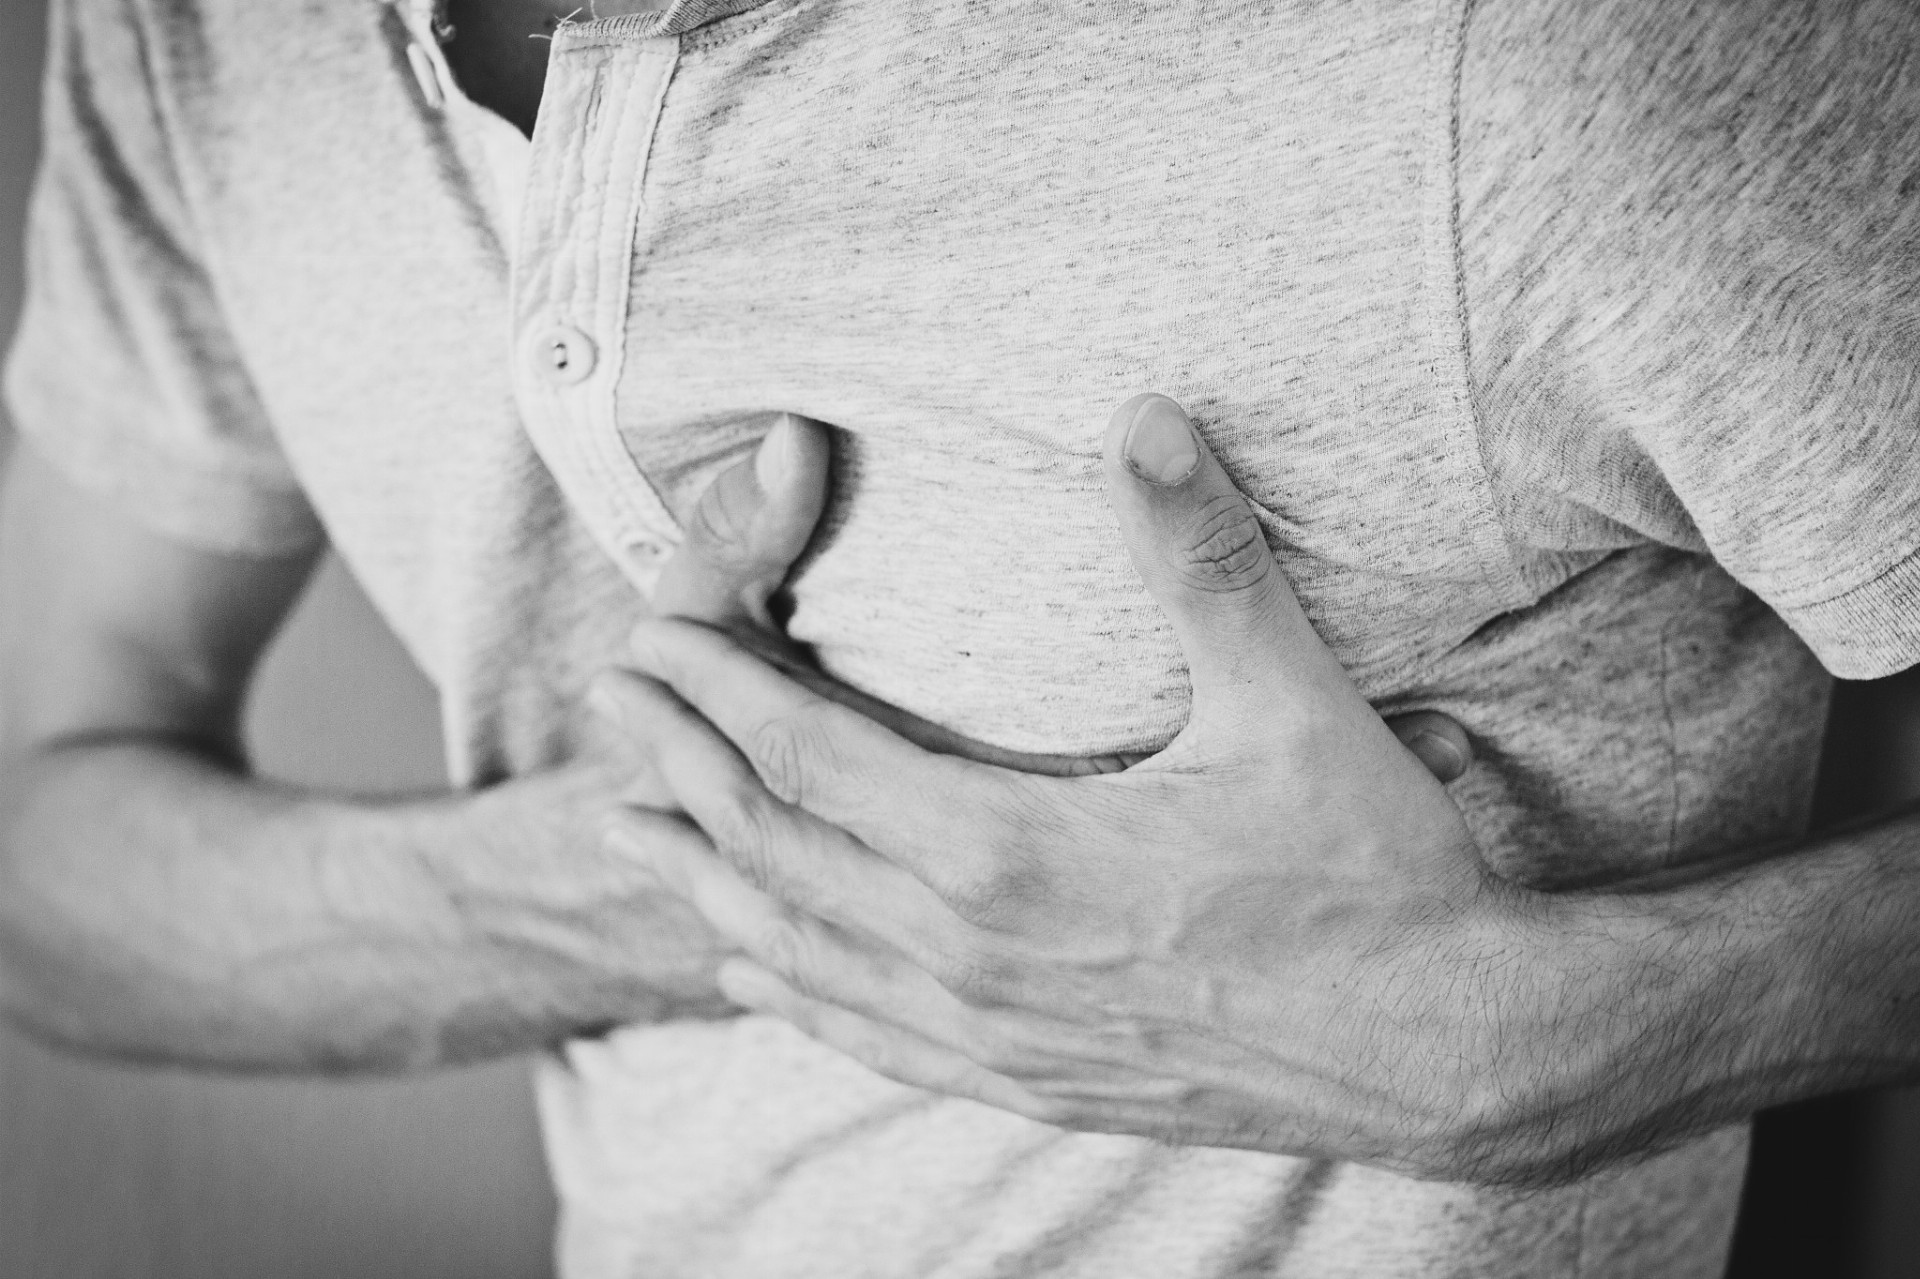 Najviac infarktov sa prejavuje nepríjemným pocitom, tlakom uprostred hrudníka trvajúcim viac minút, alebo striedavo slabnúcim a opäť silnejúcim tlakom. Ženy pociťujú bolesť alebo nepríjemný tlak v hrudi pri infarkte vo všeobecnosti častejšie ako muži.